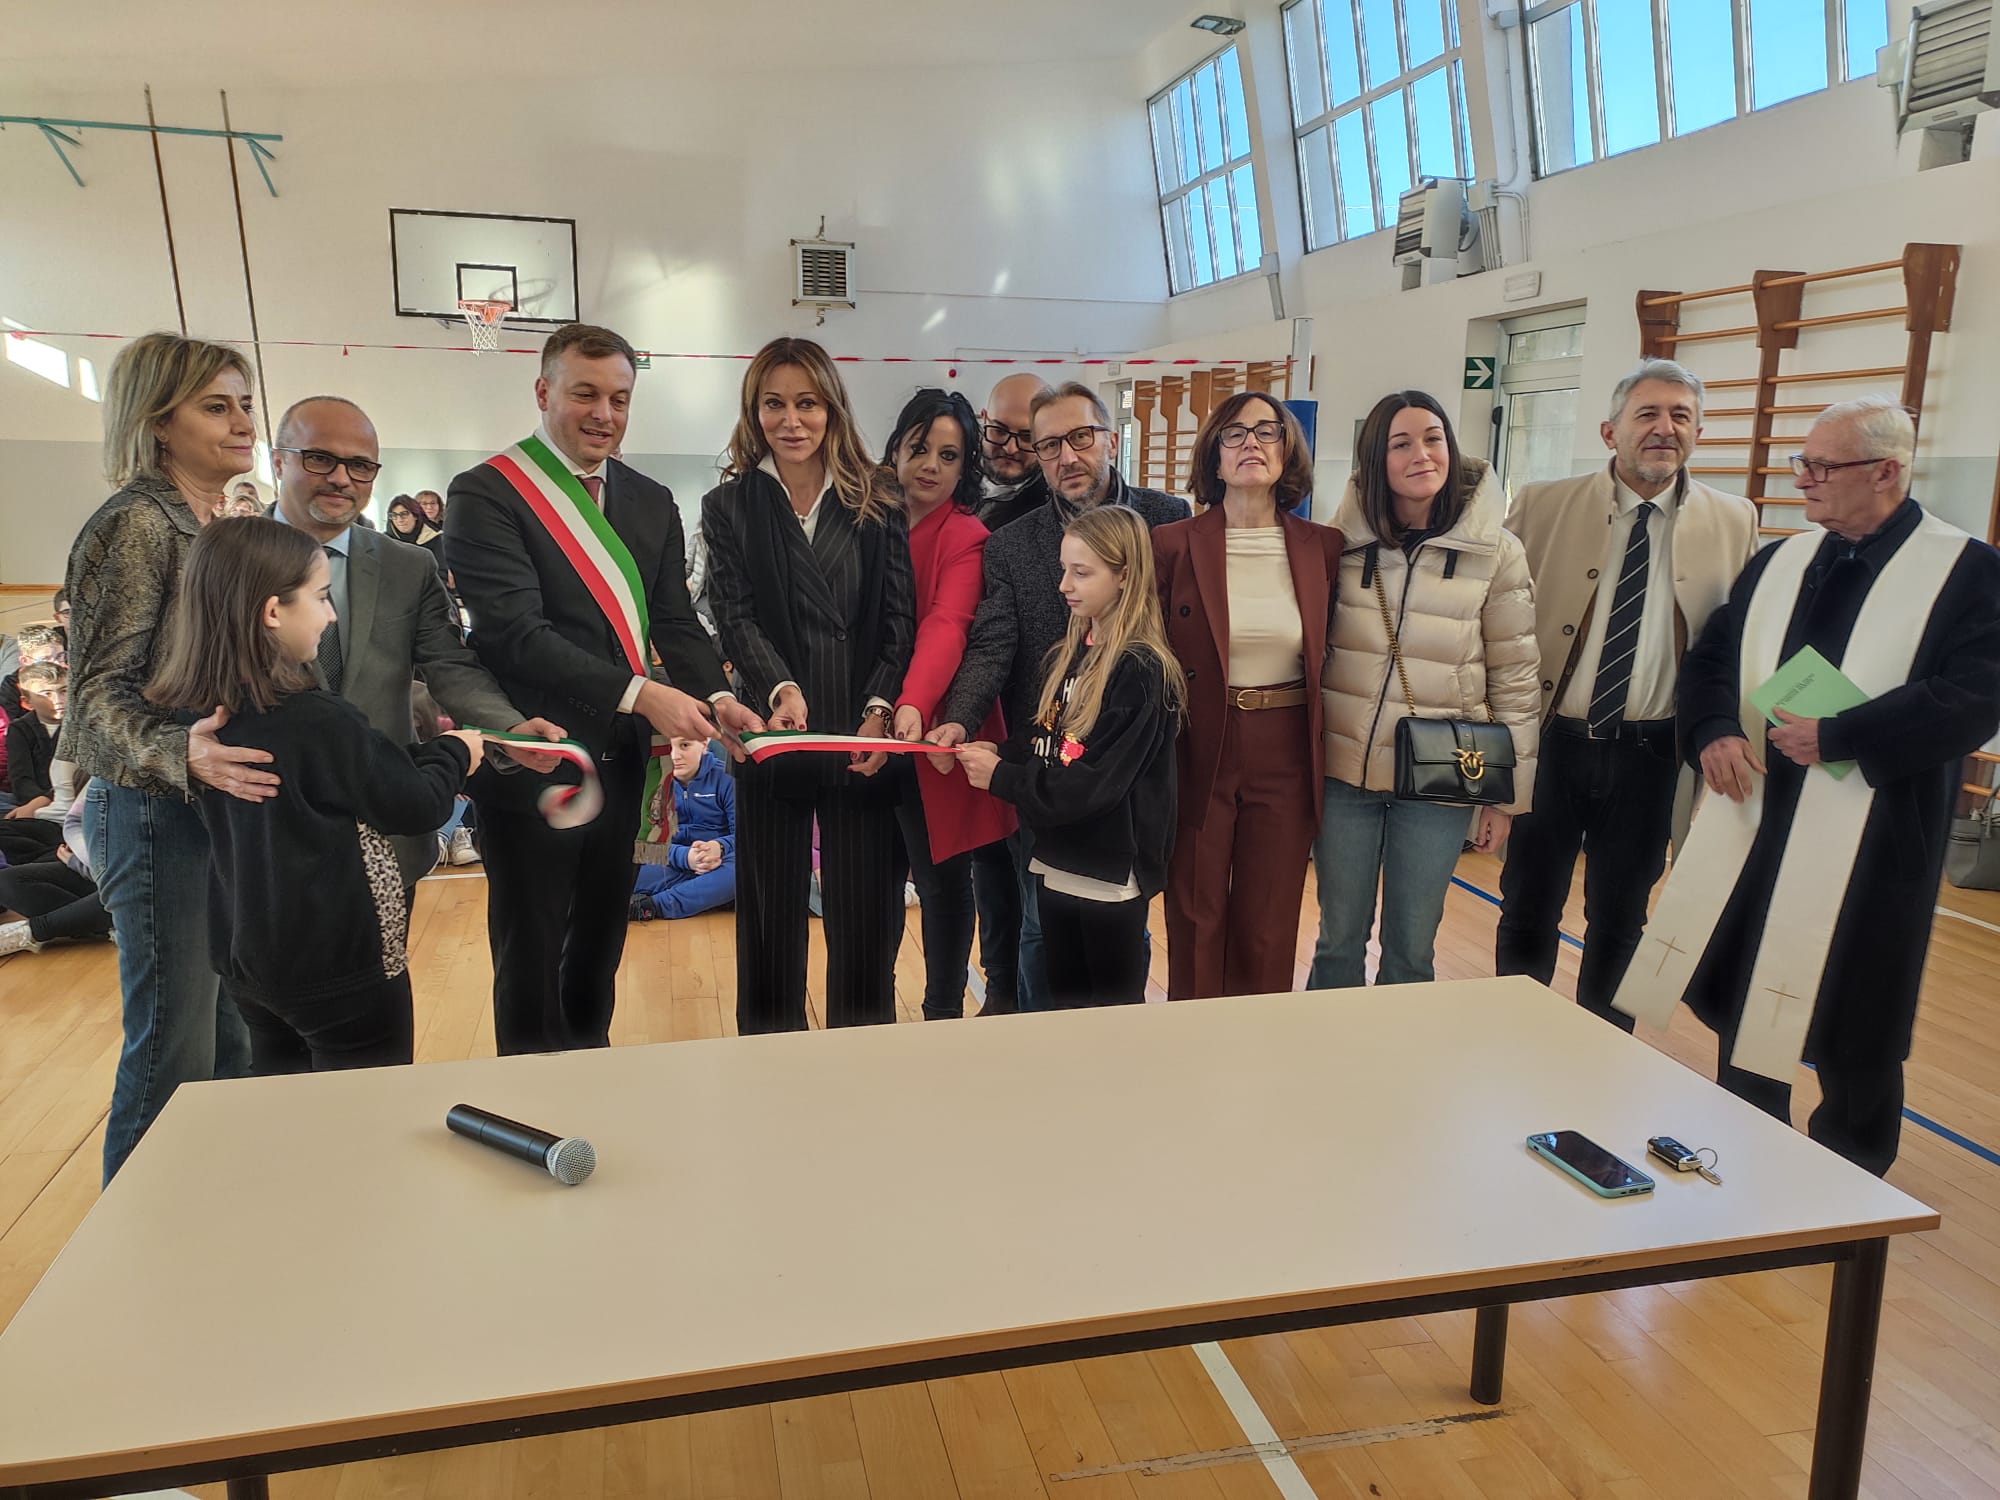 Citerna – Inaugurata la palestra della scuola media “Leopardi” di Pistrino dopo i lavori di riqualificazione